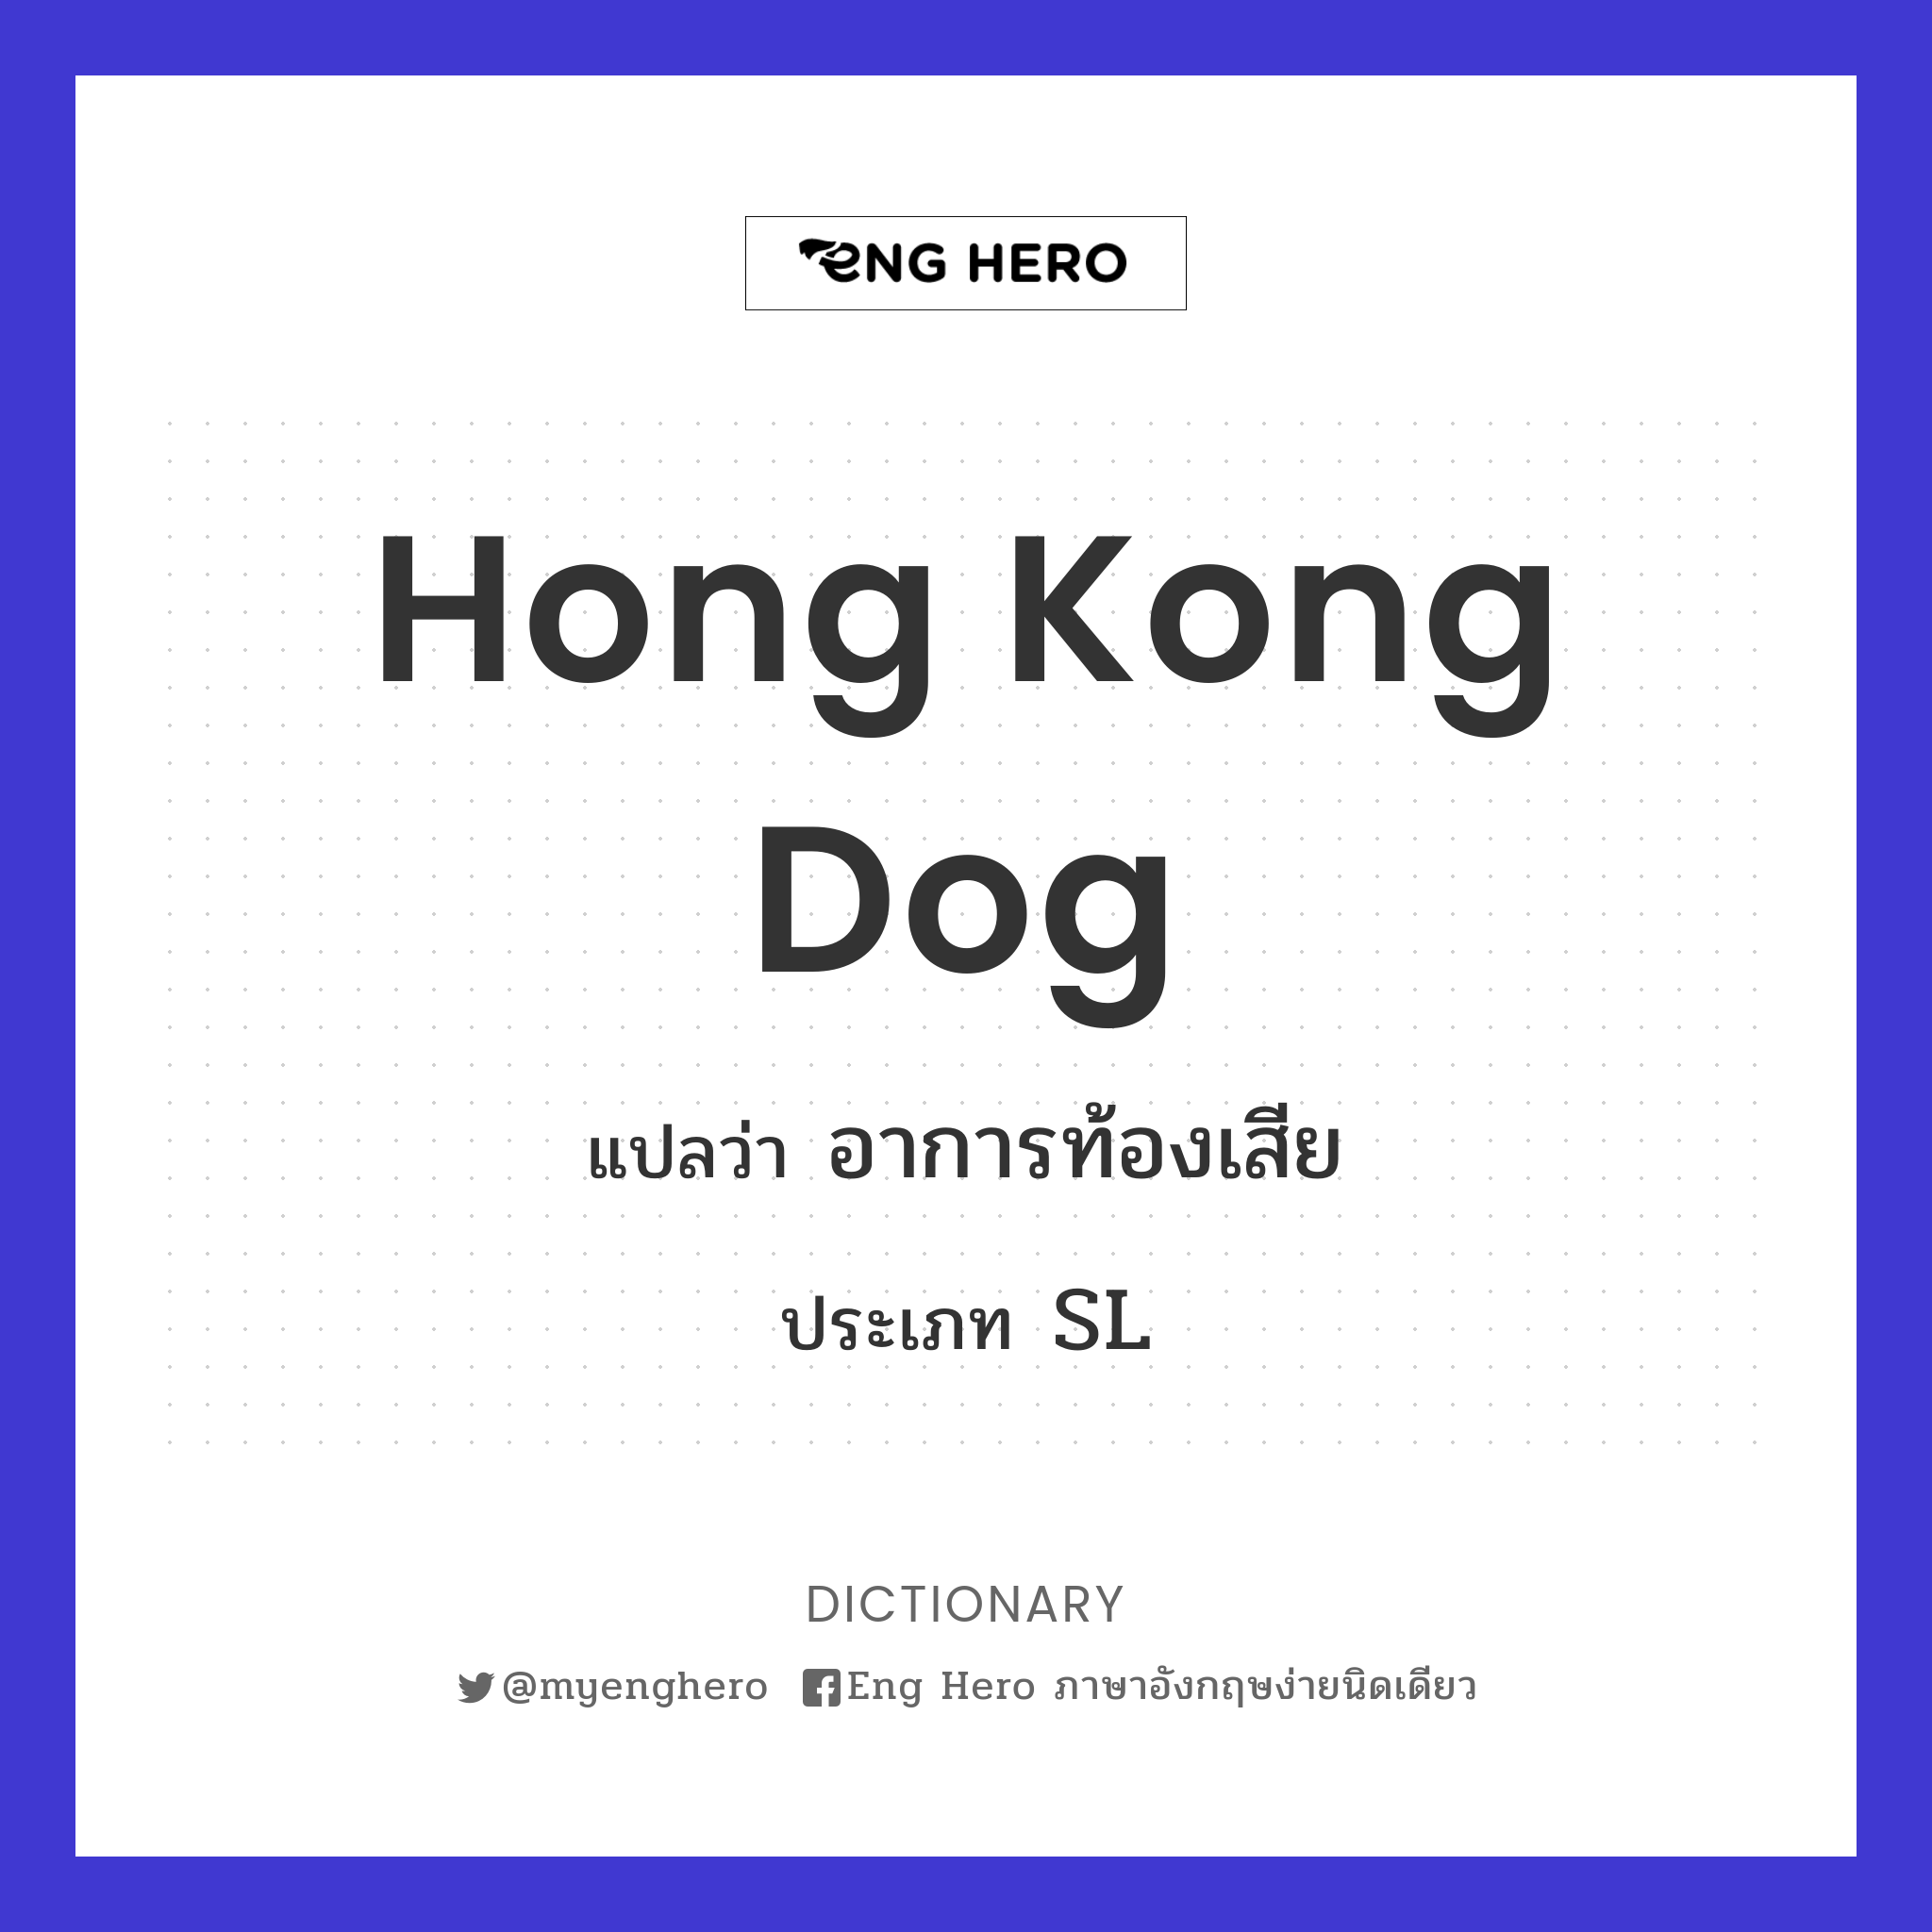 Hong Kong dog